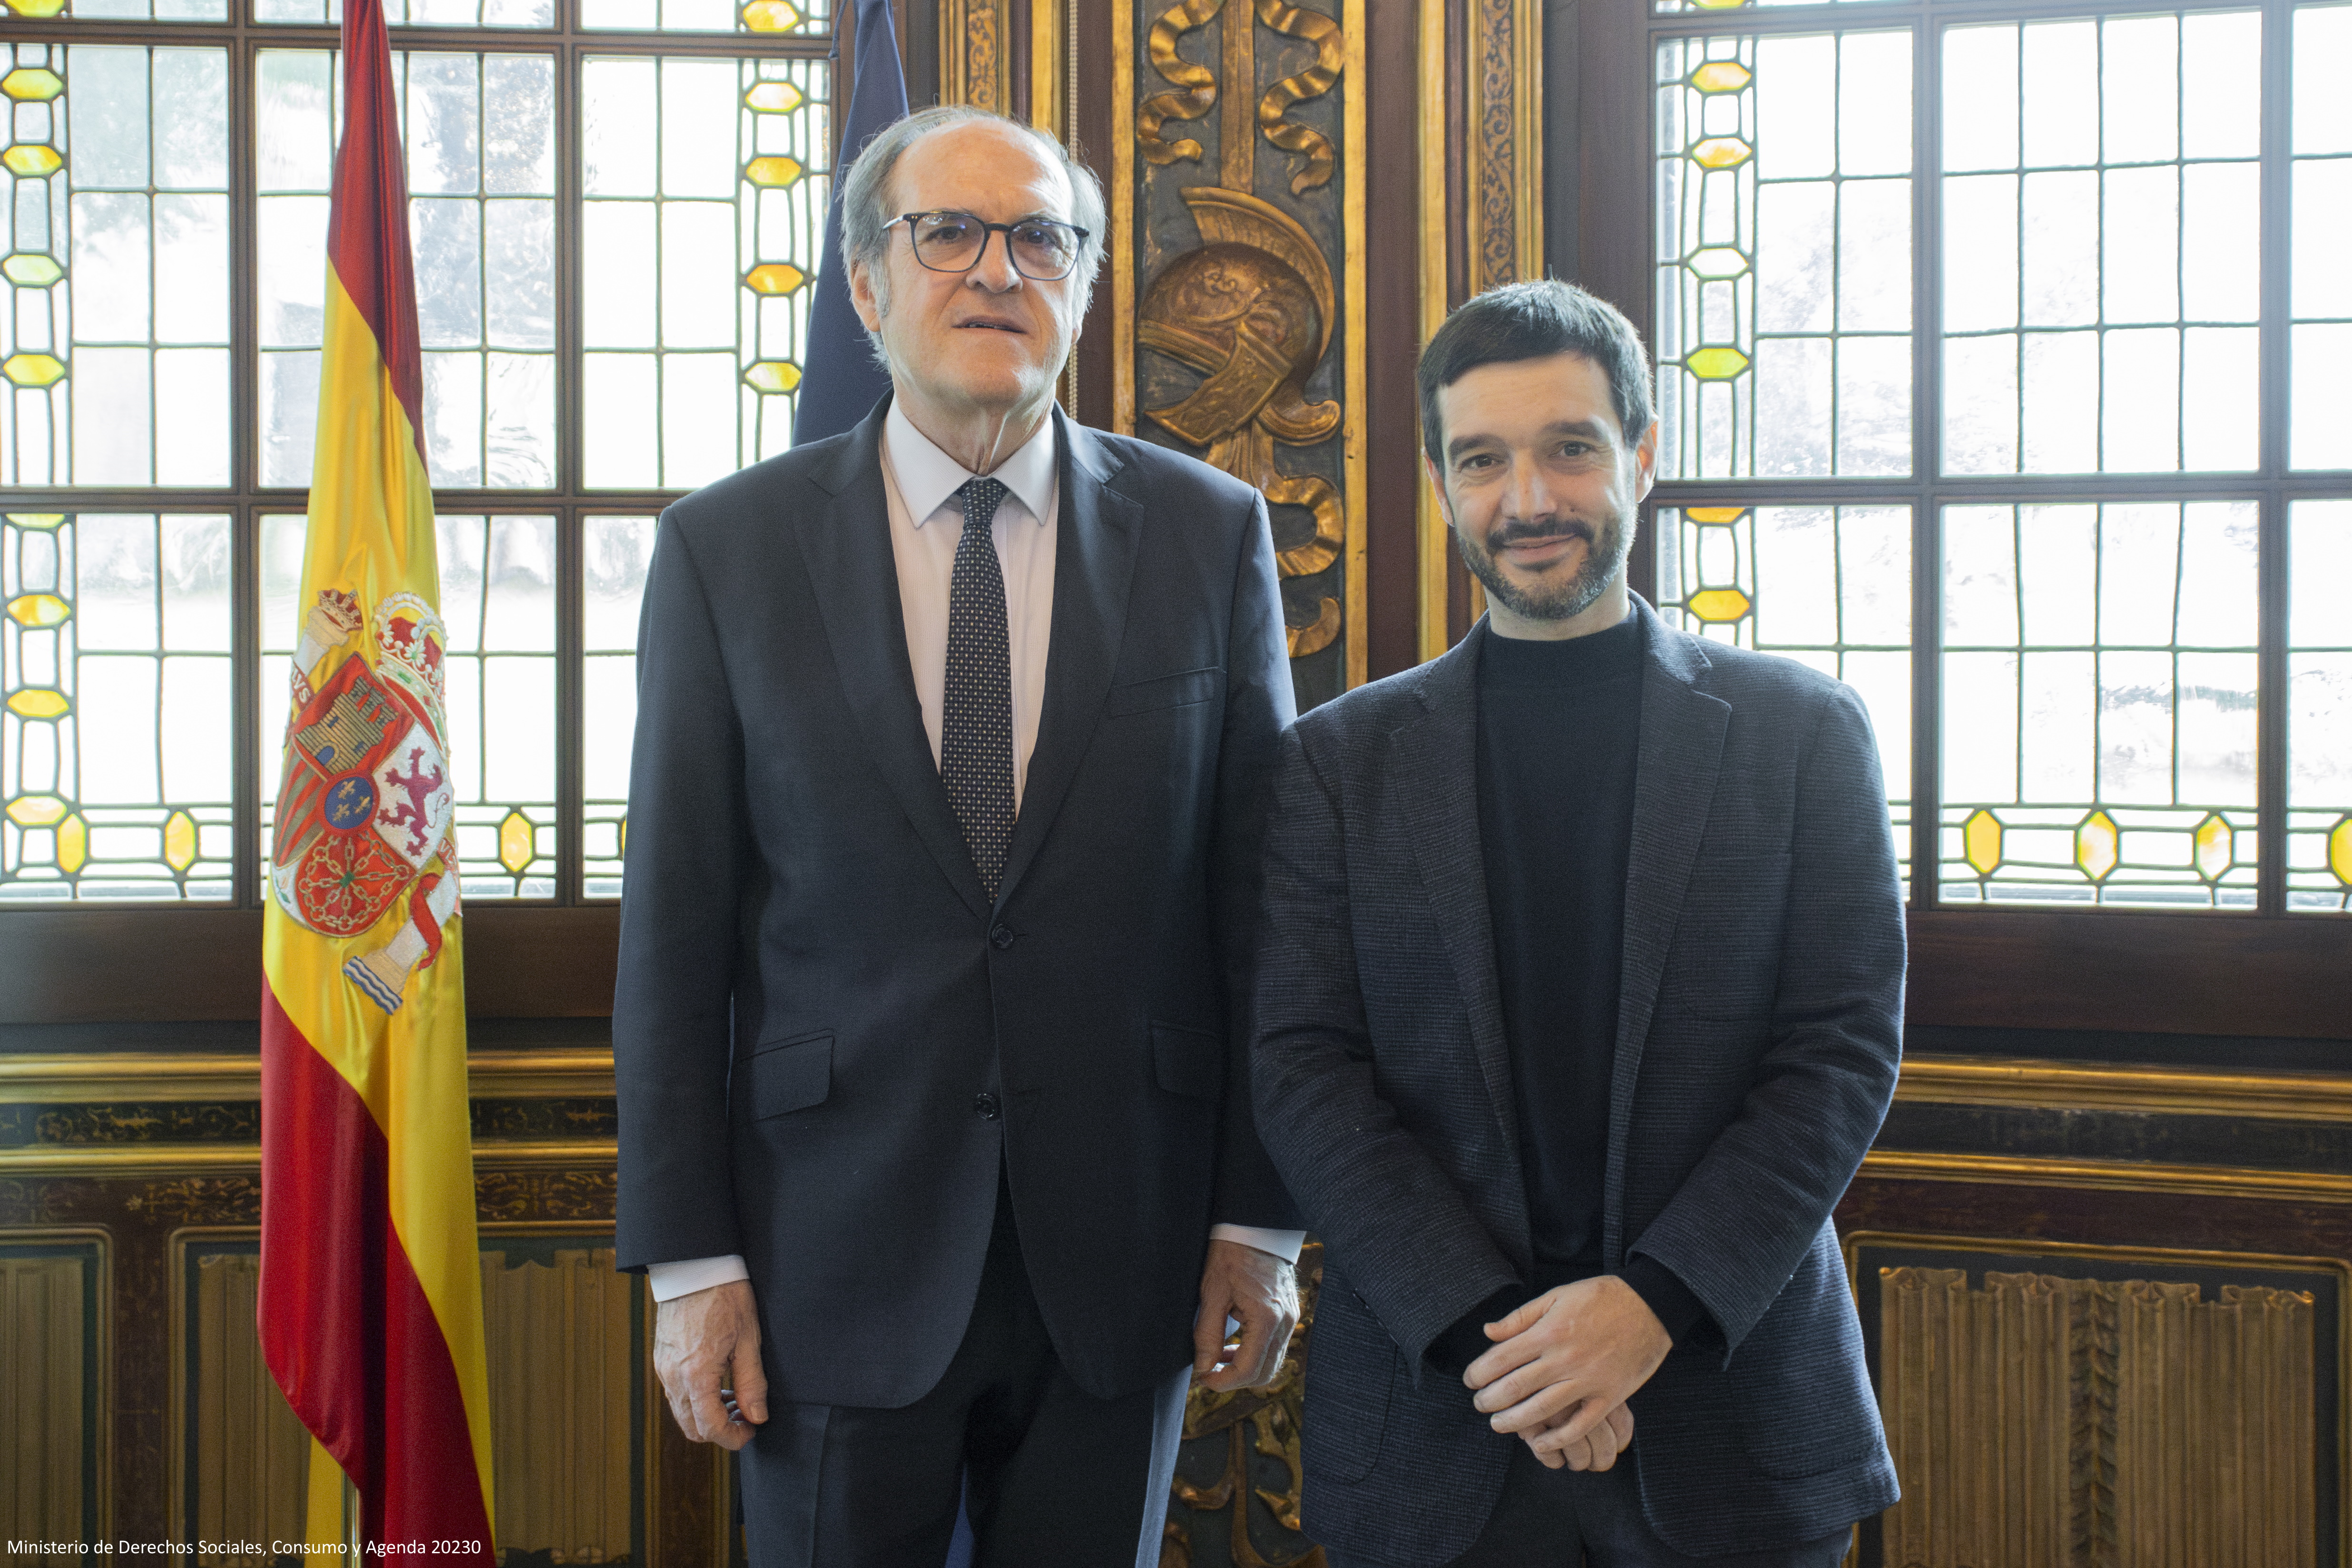 El Defensor del Pueblo, Ángel Gabilondo y el ministro de Derechos Sociales, Consumo y Agenda 2030, Pablo Bustunduy